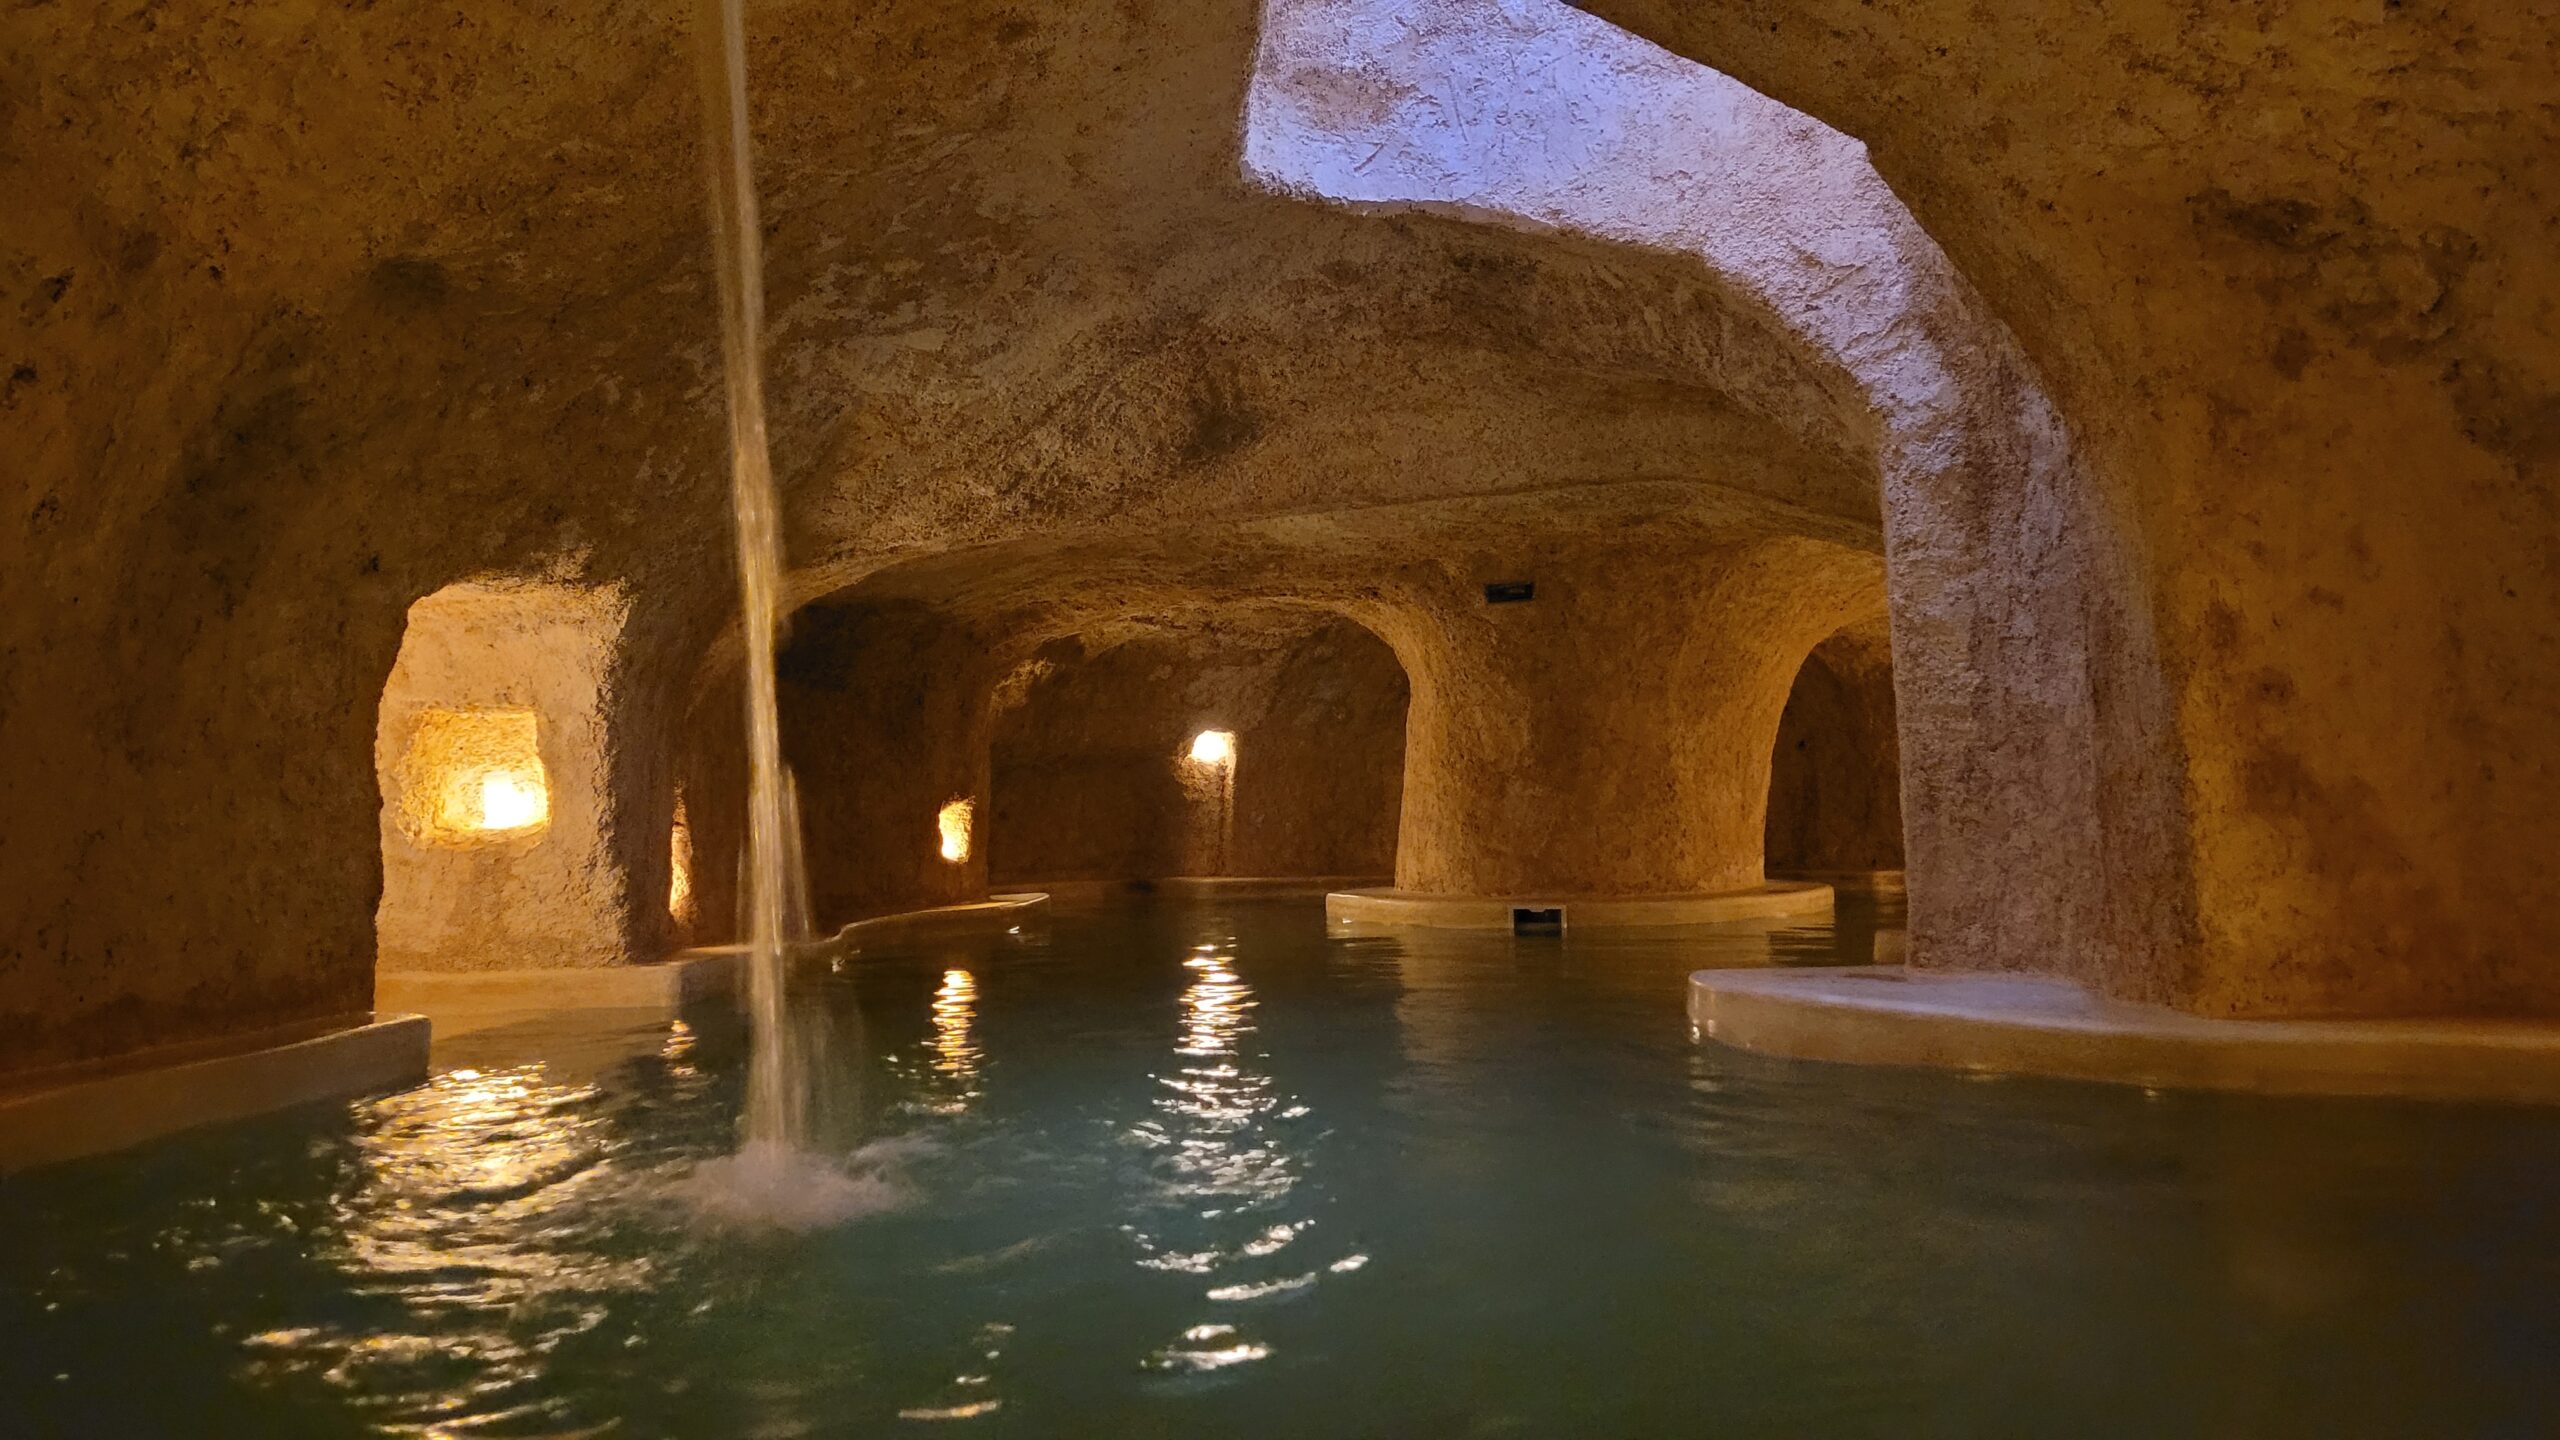 zentik project valladolid piscine grotte